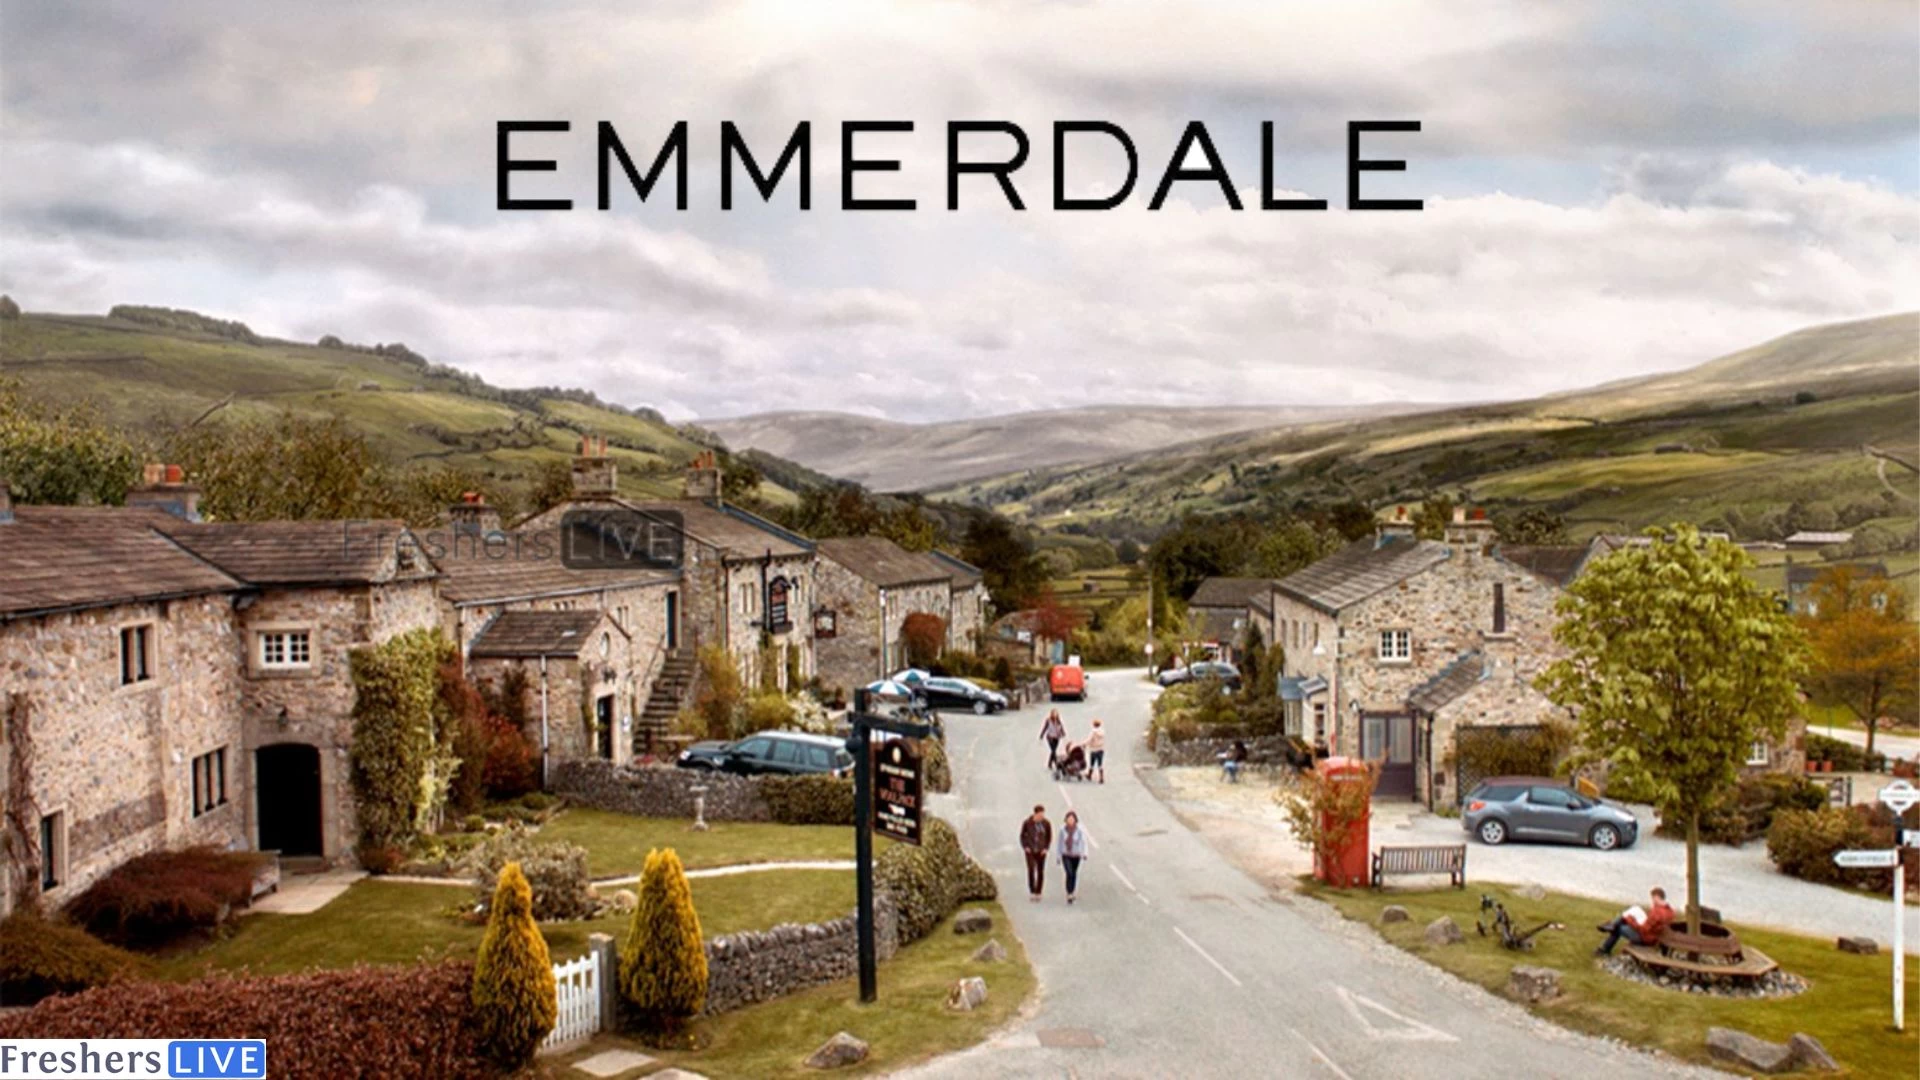 Emmerdale Spoilers For Next Week: A Sneak Peek of Upcoming Story Line